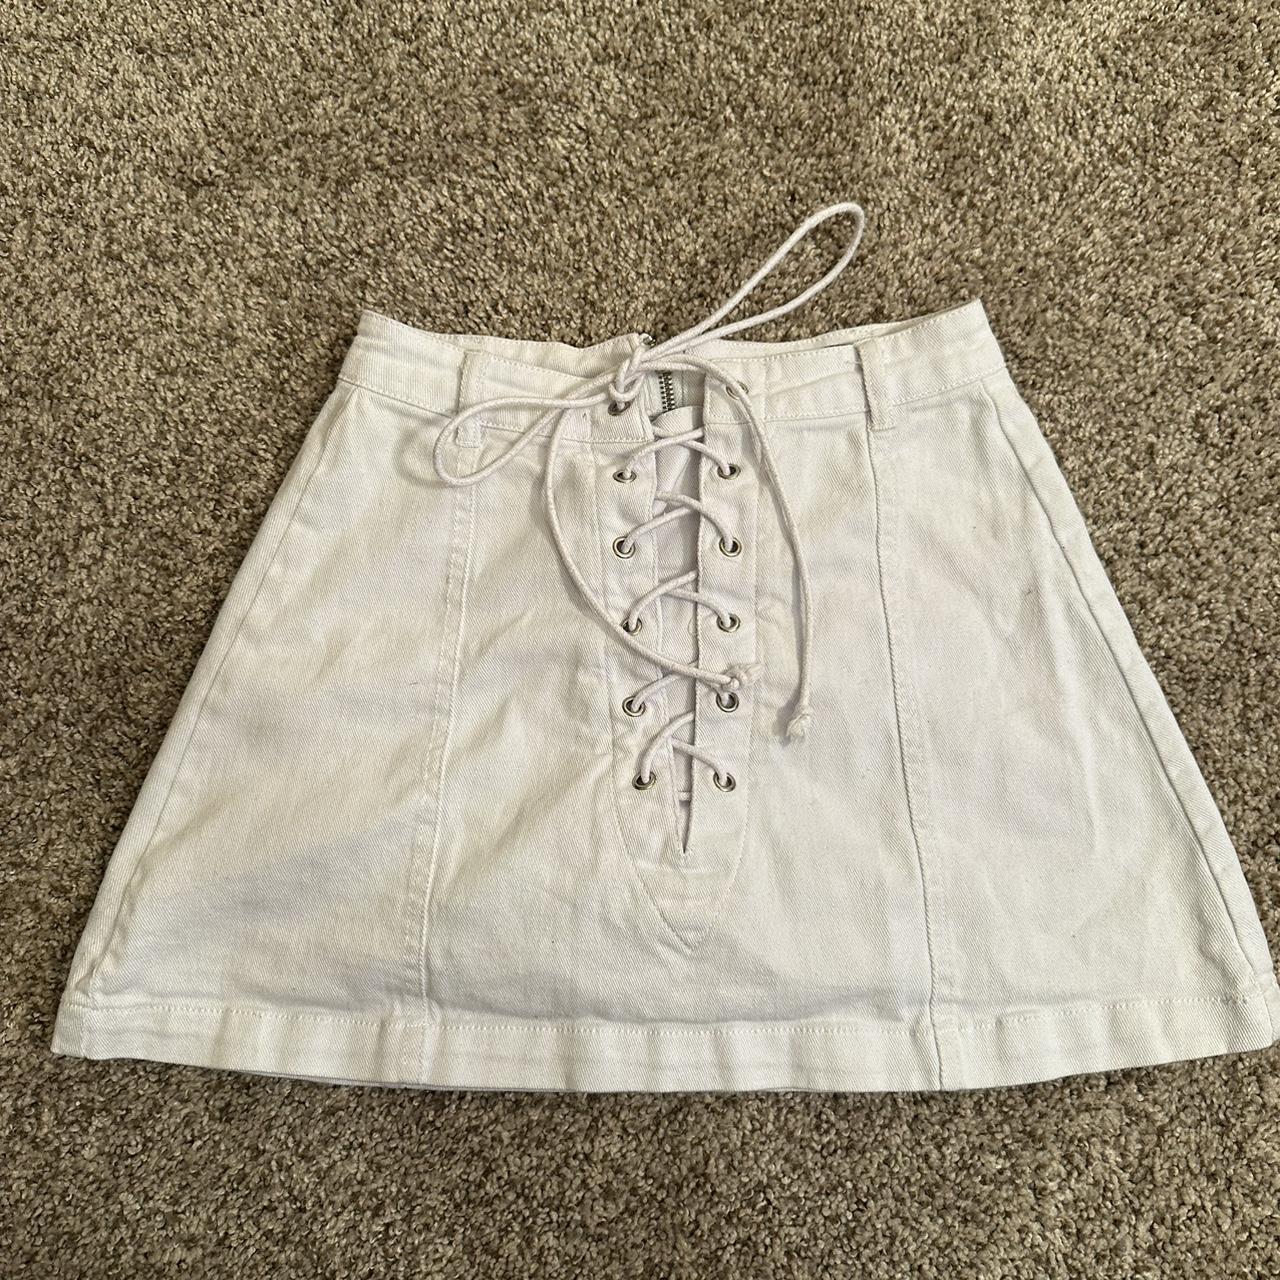 White mini skirt - Depop